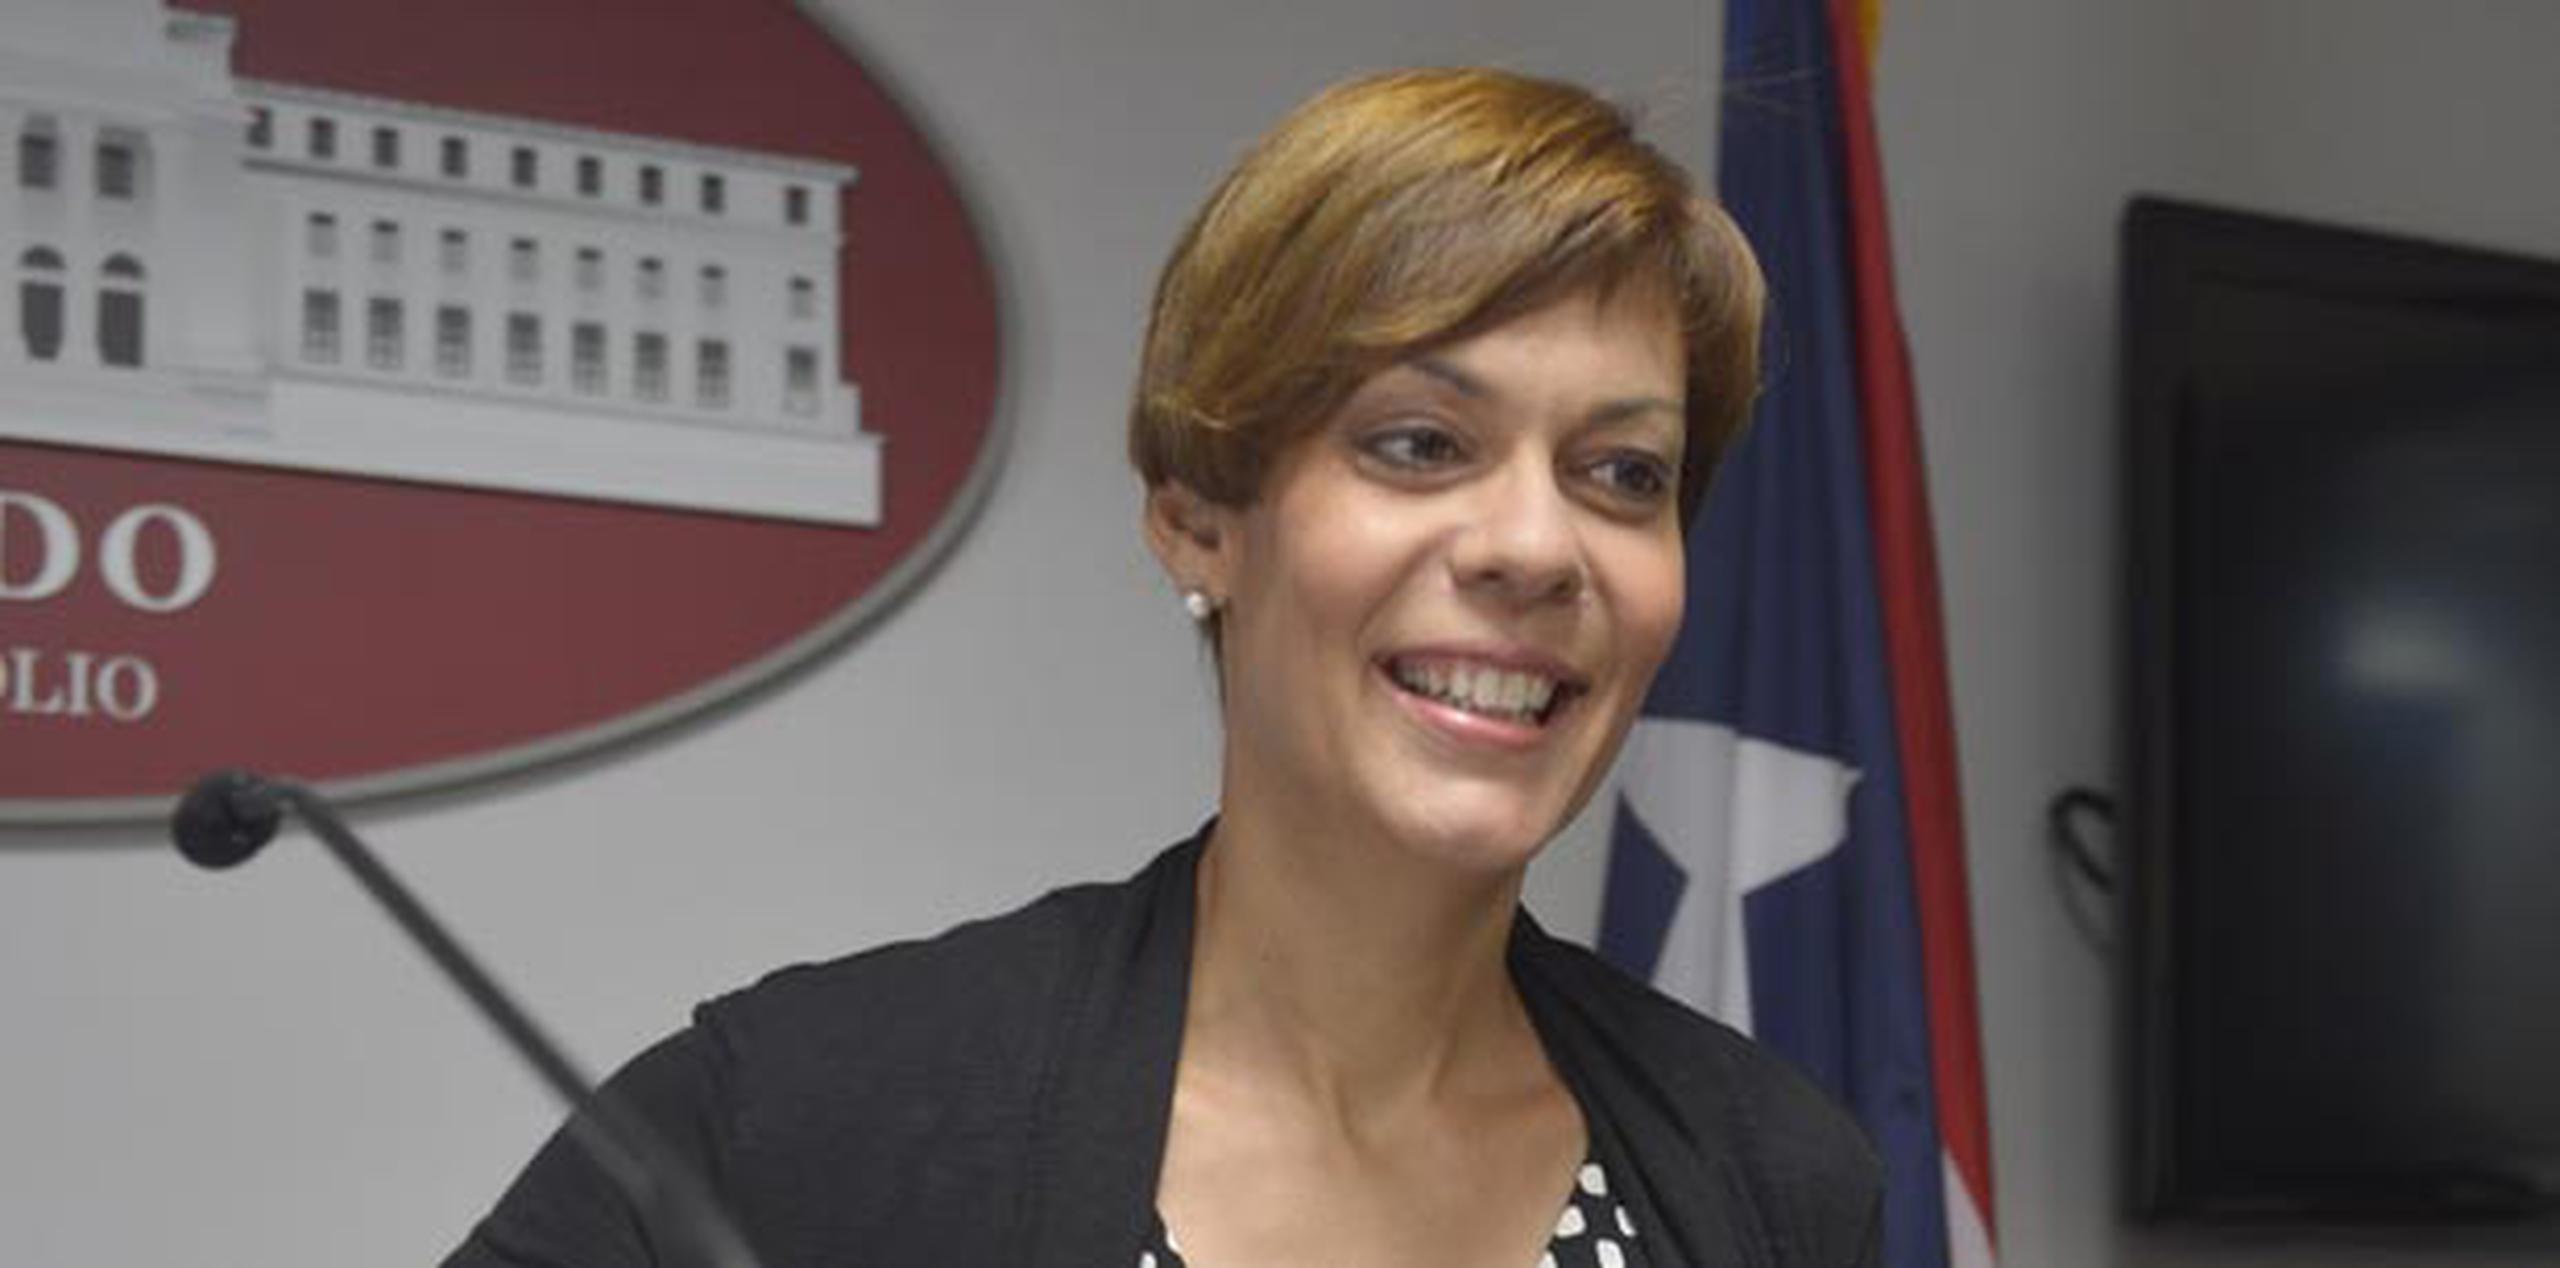 La medida fue radicada por la senadora del Partido Independentista Puertorriqueño (PIP), María de Lourdes Santiago. (Archivo)